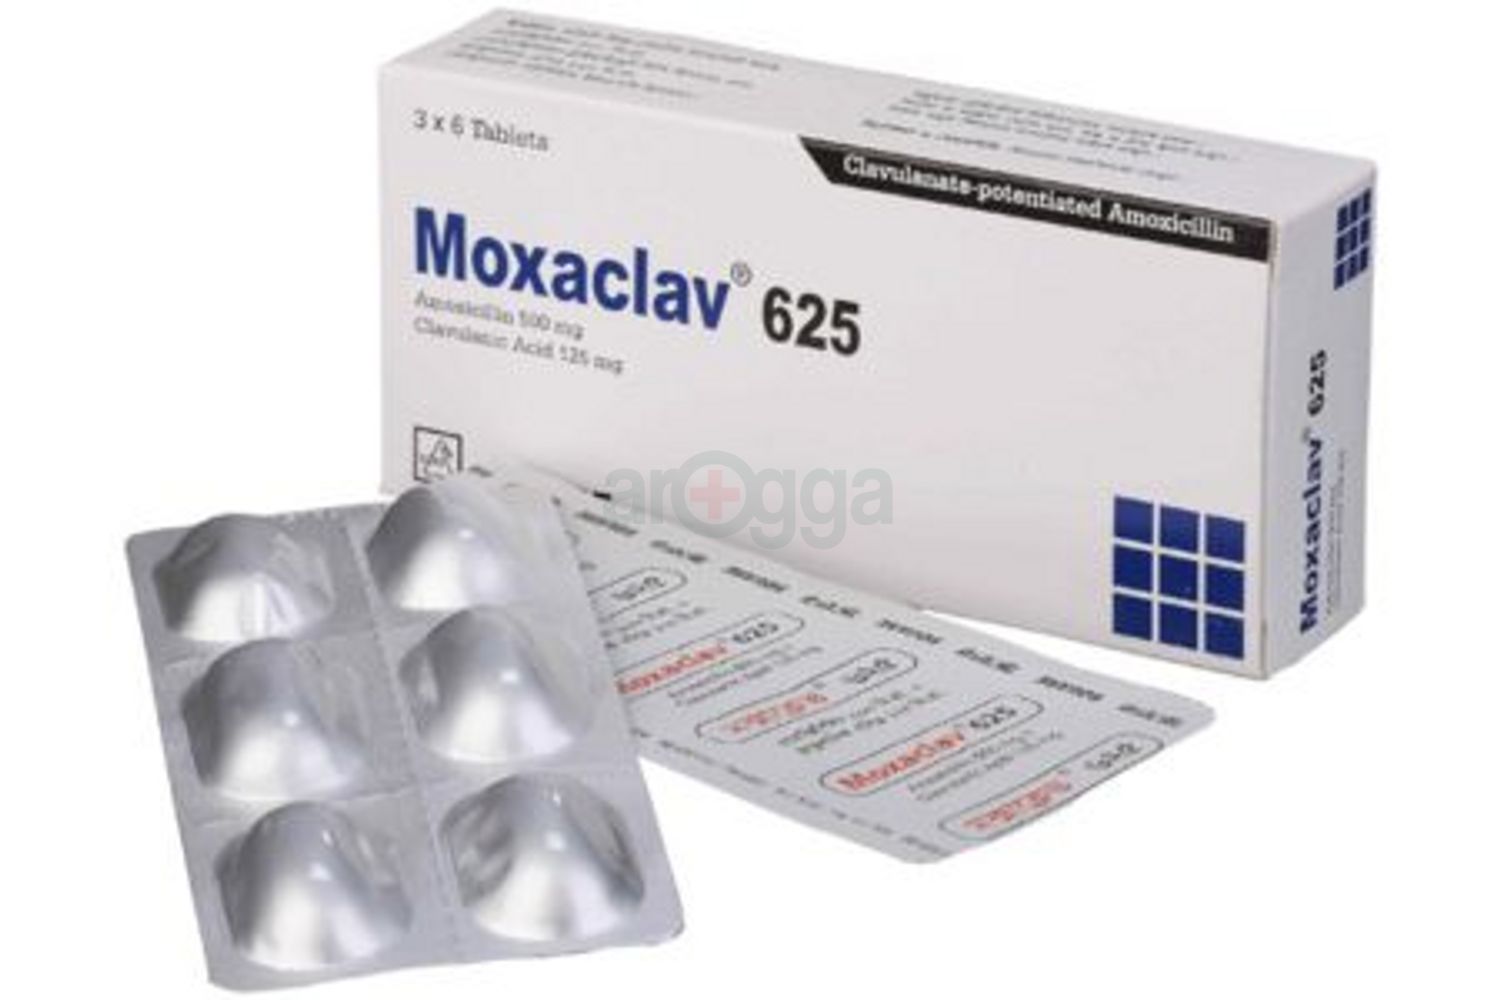 Moxaclav 625